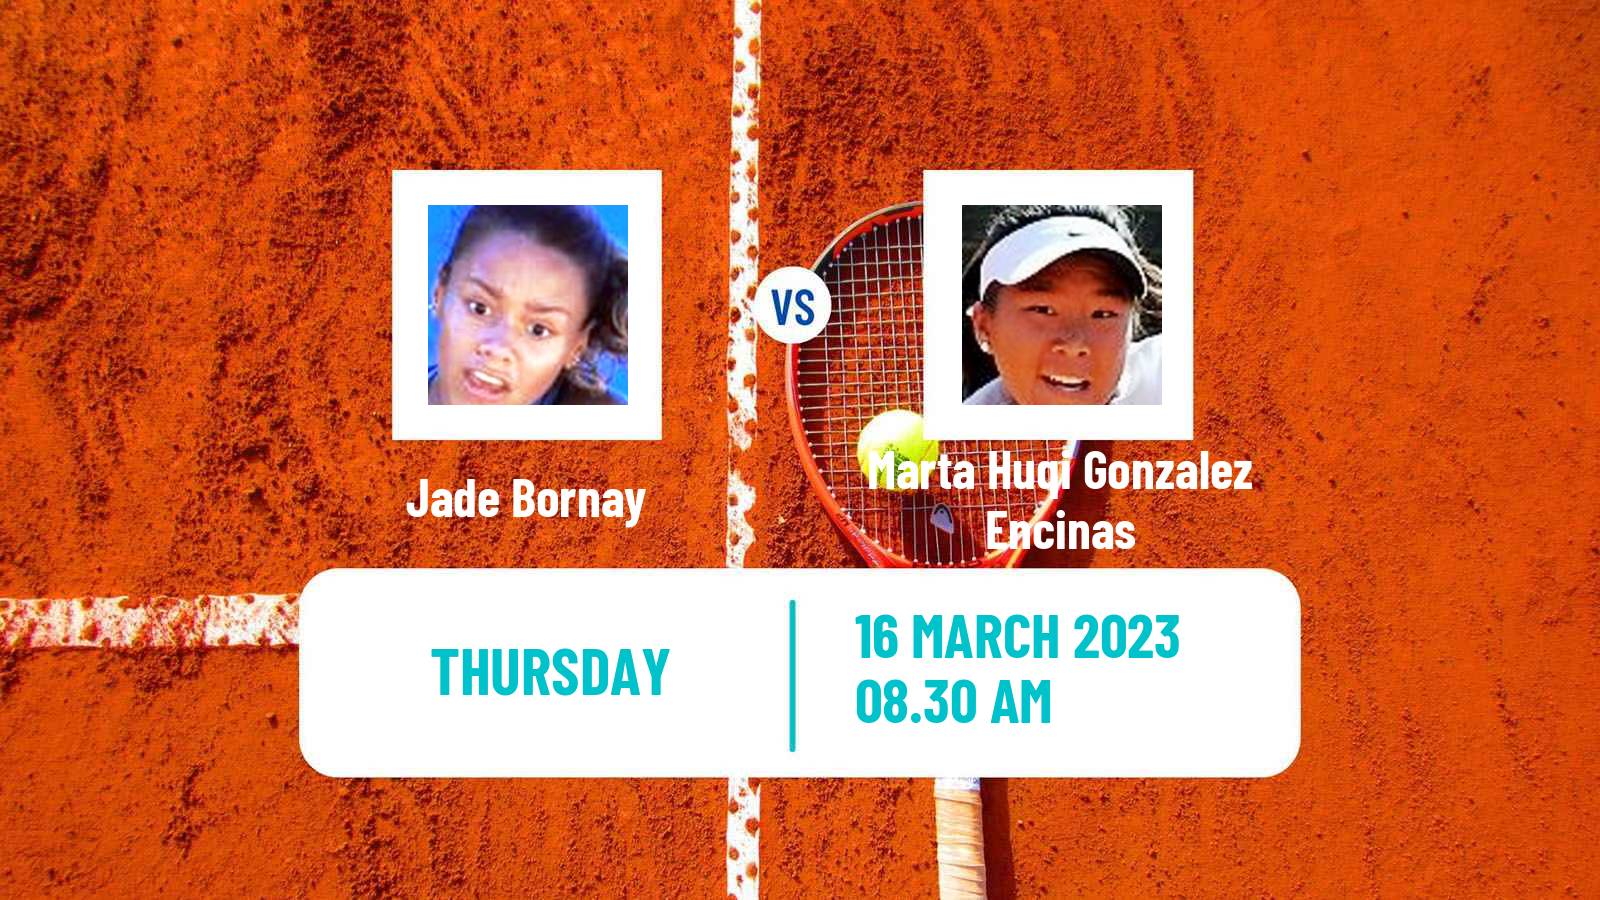 Tennis ITF Tournaments Jade Bornay - Marta Huqi Gonzalez Encinas